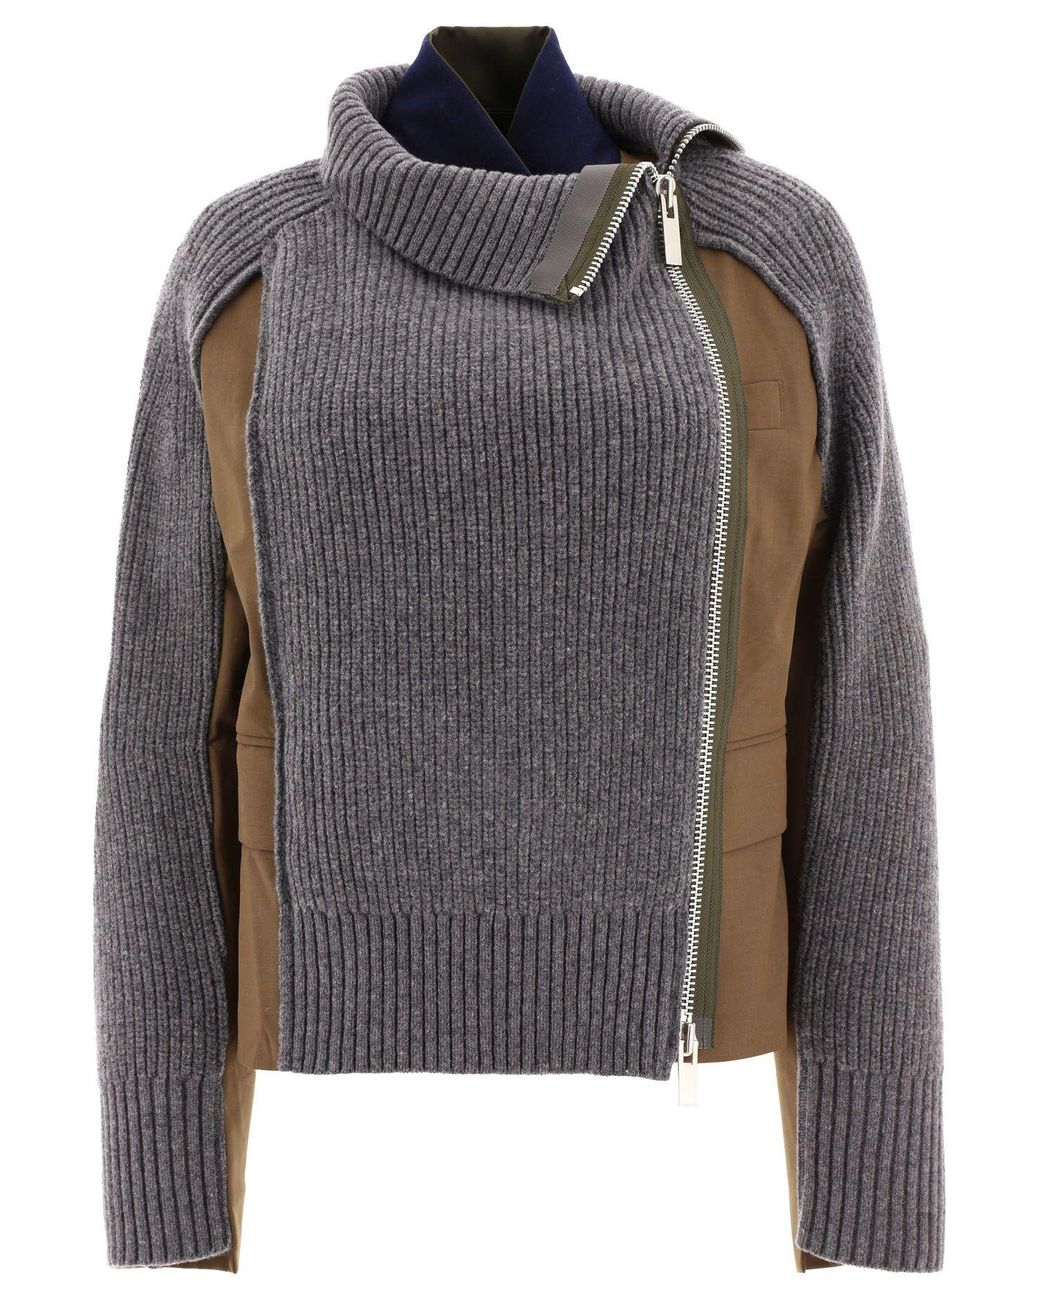 ブランド sacai - sacai 21aw Wool Knit x Suiting Jacketの通販 by